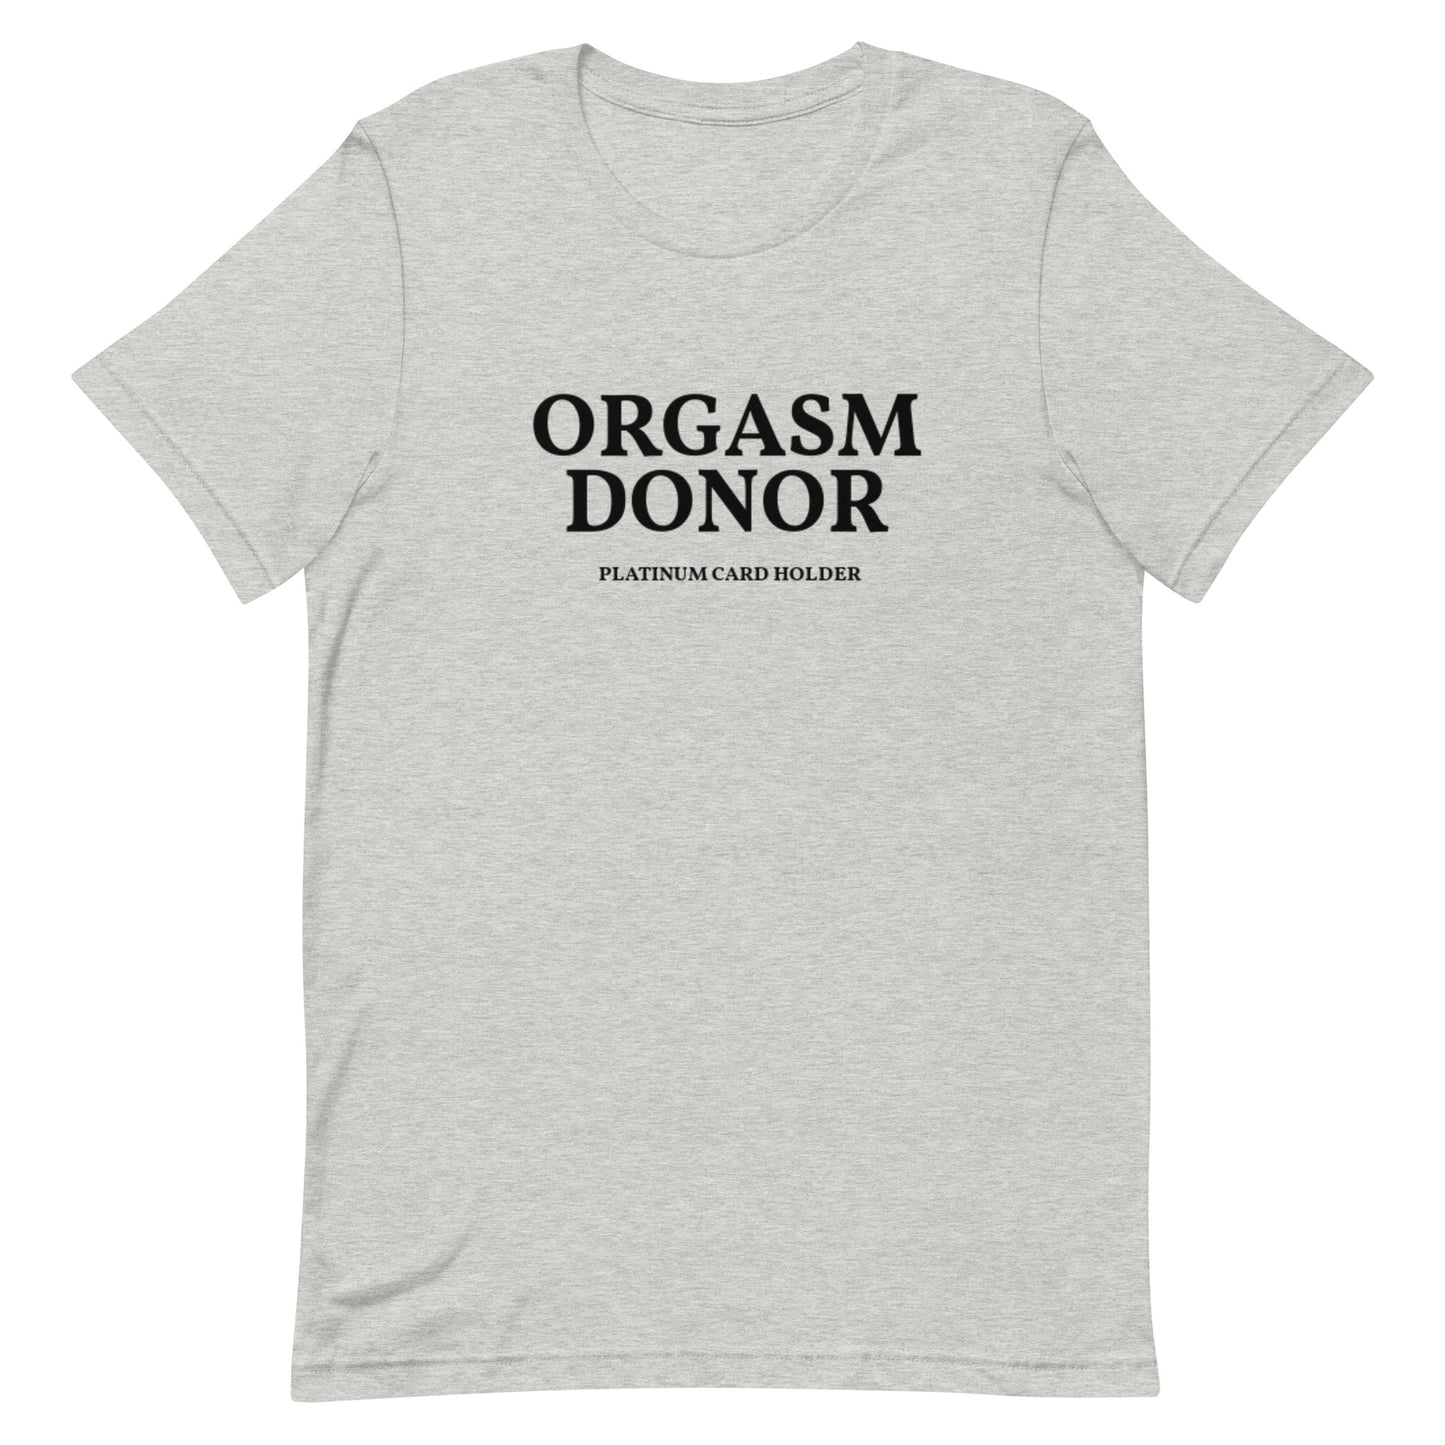 Orgasm donor